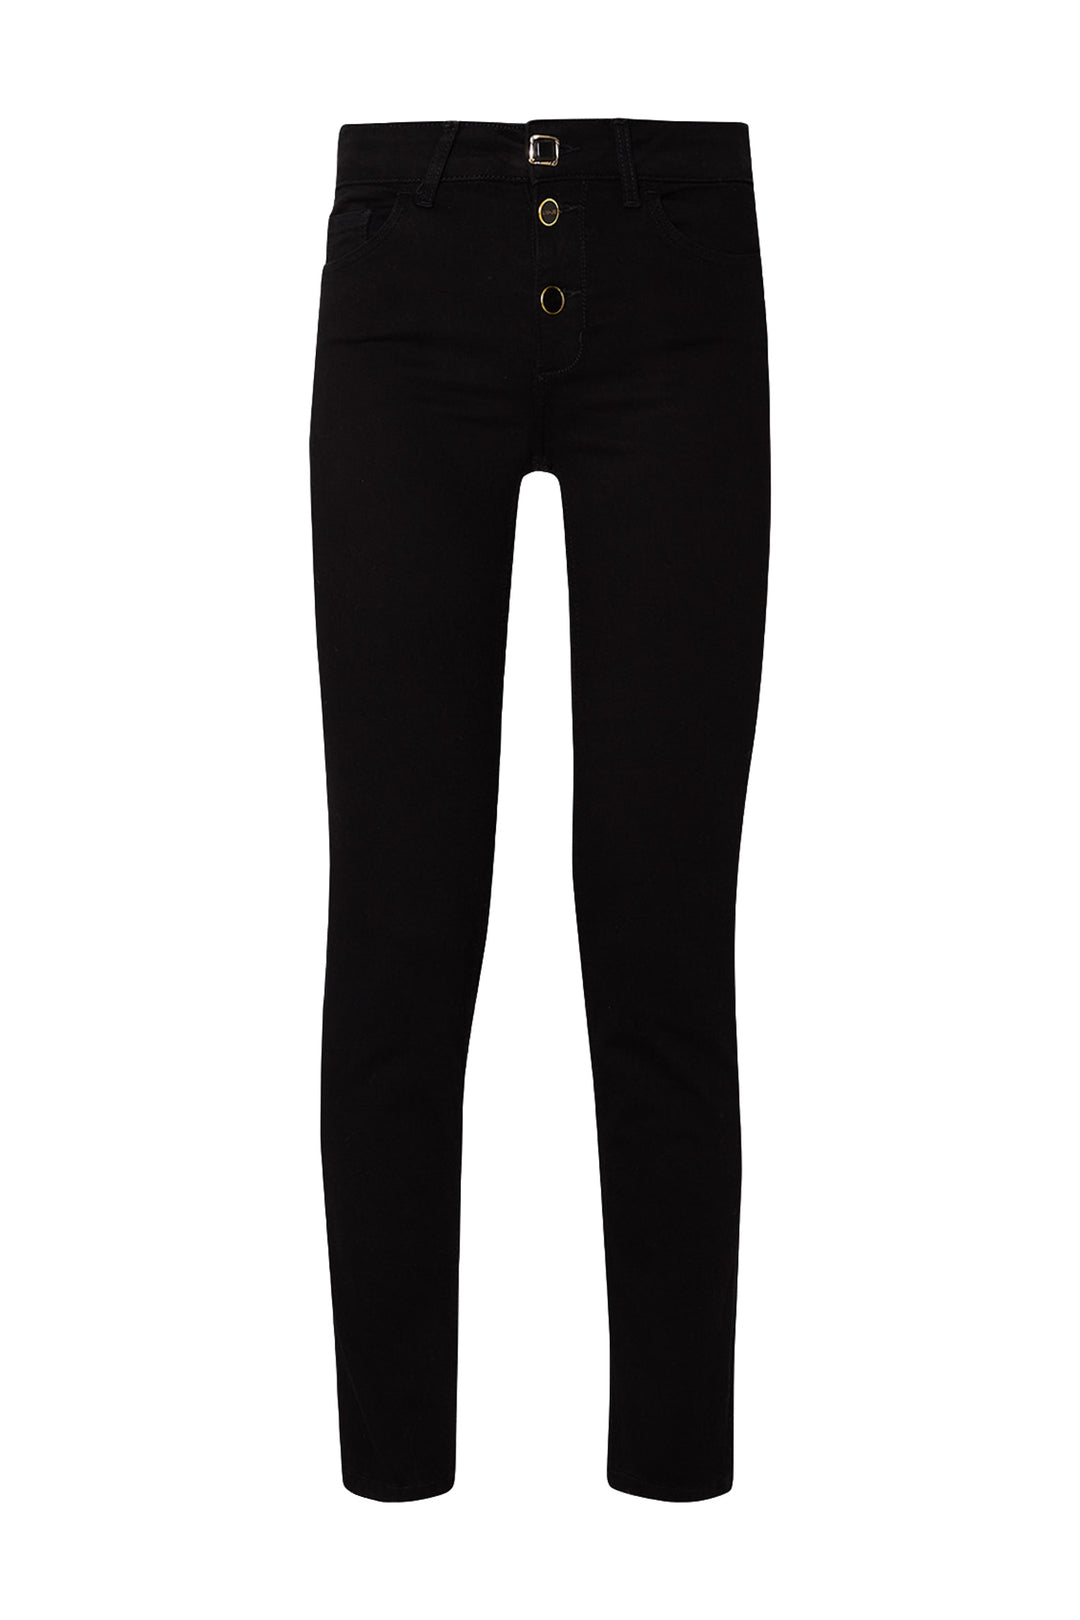 LIU JO Jeans skinny nero in denim di cotone stretch - Mancinelli 1954